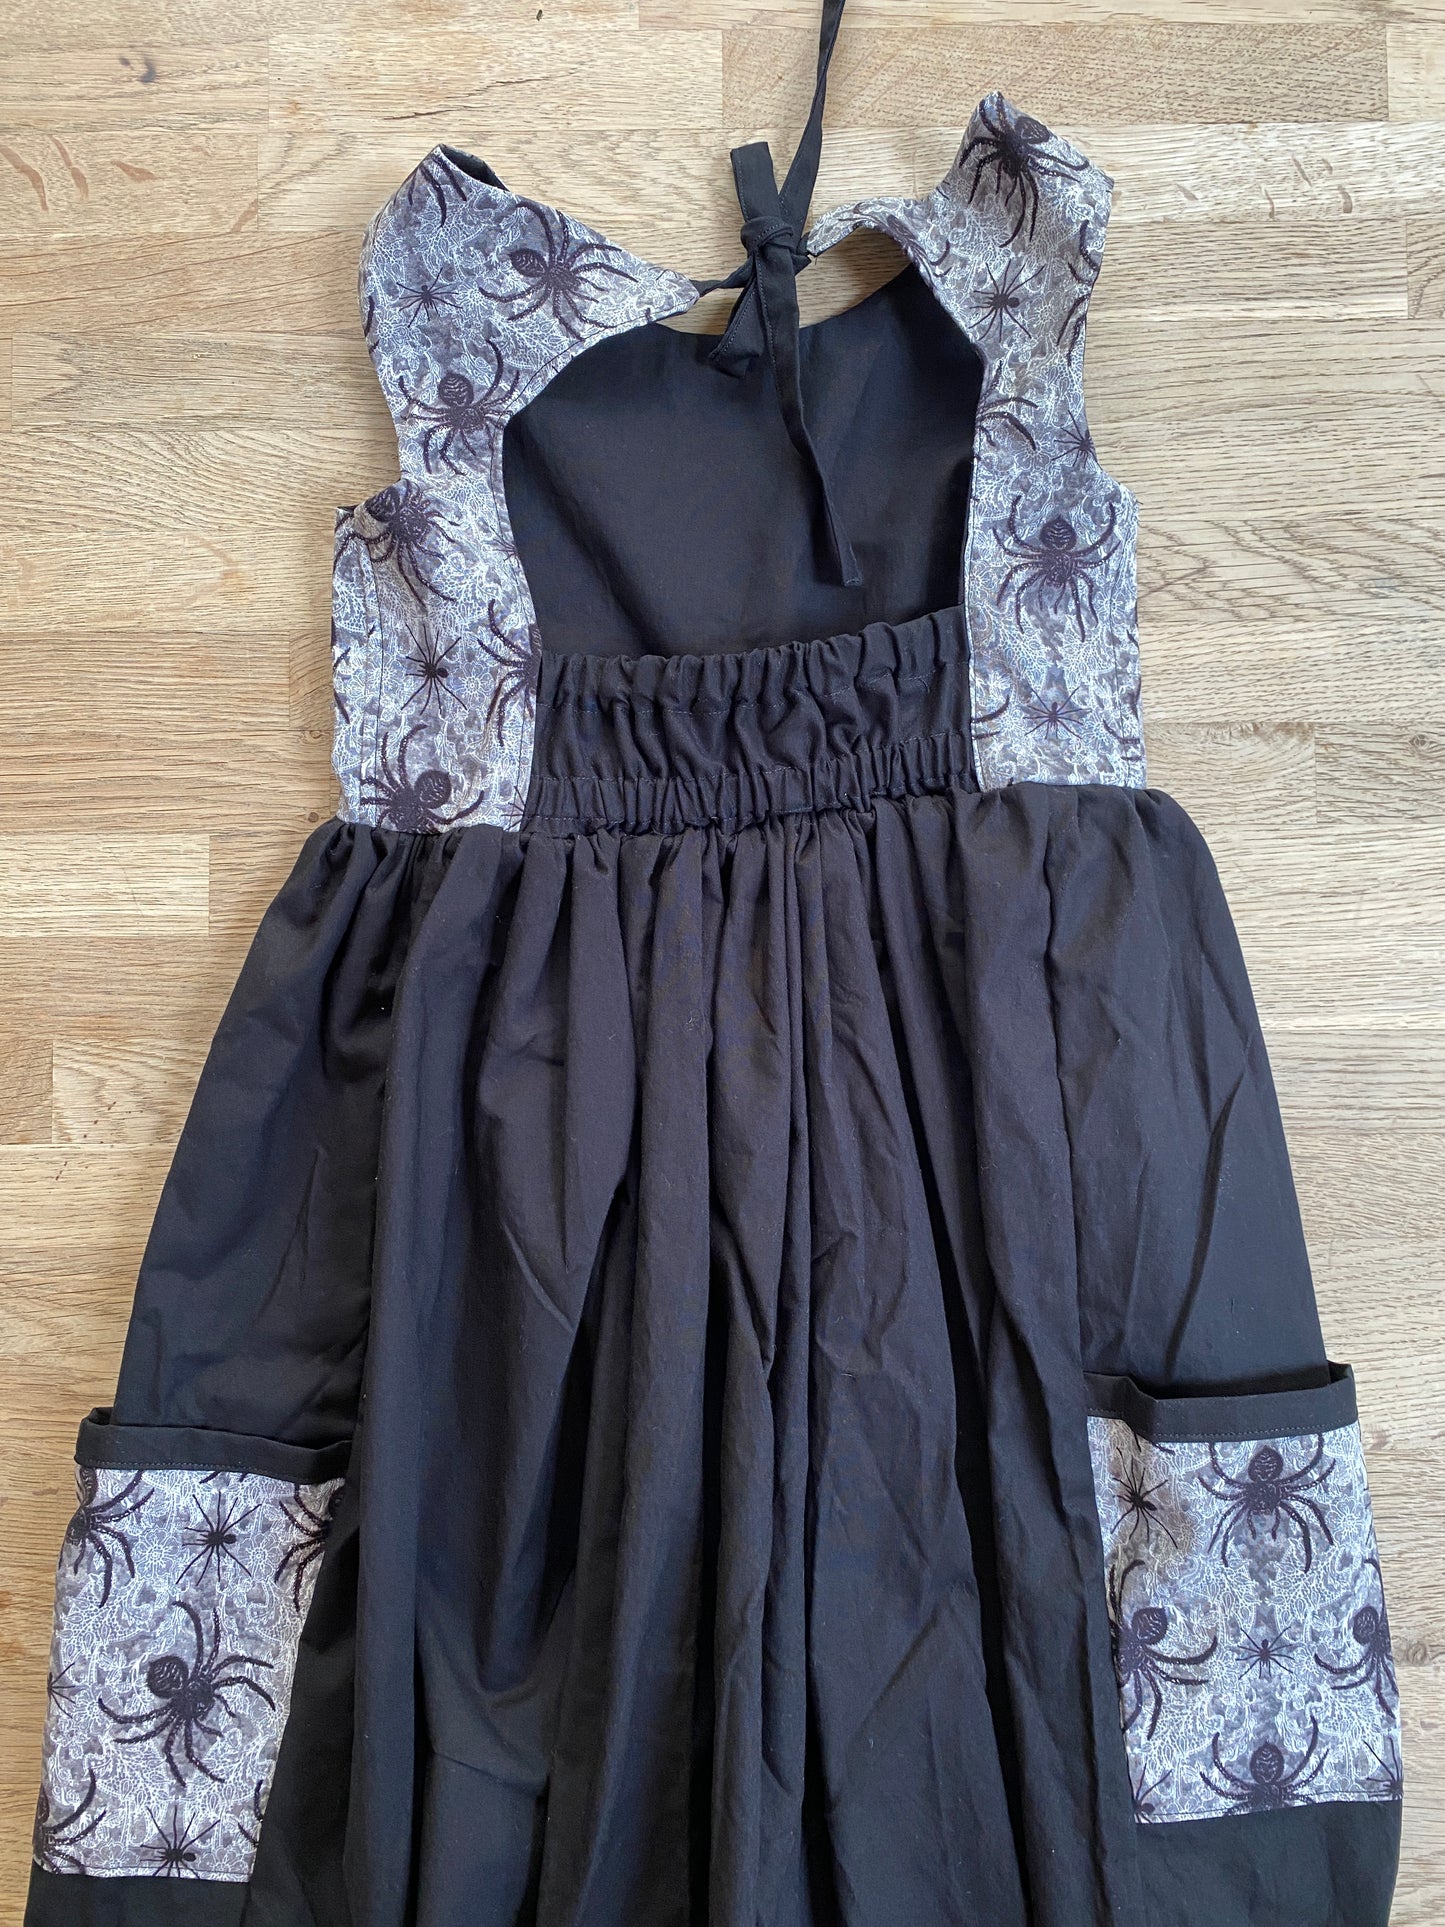 Black Spider Dress (SAMPLE) - Size 8